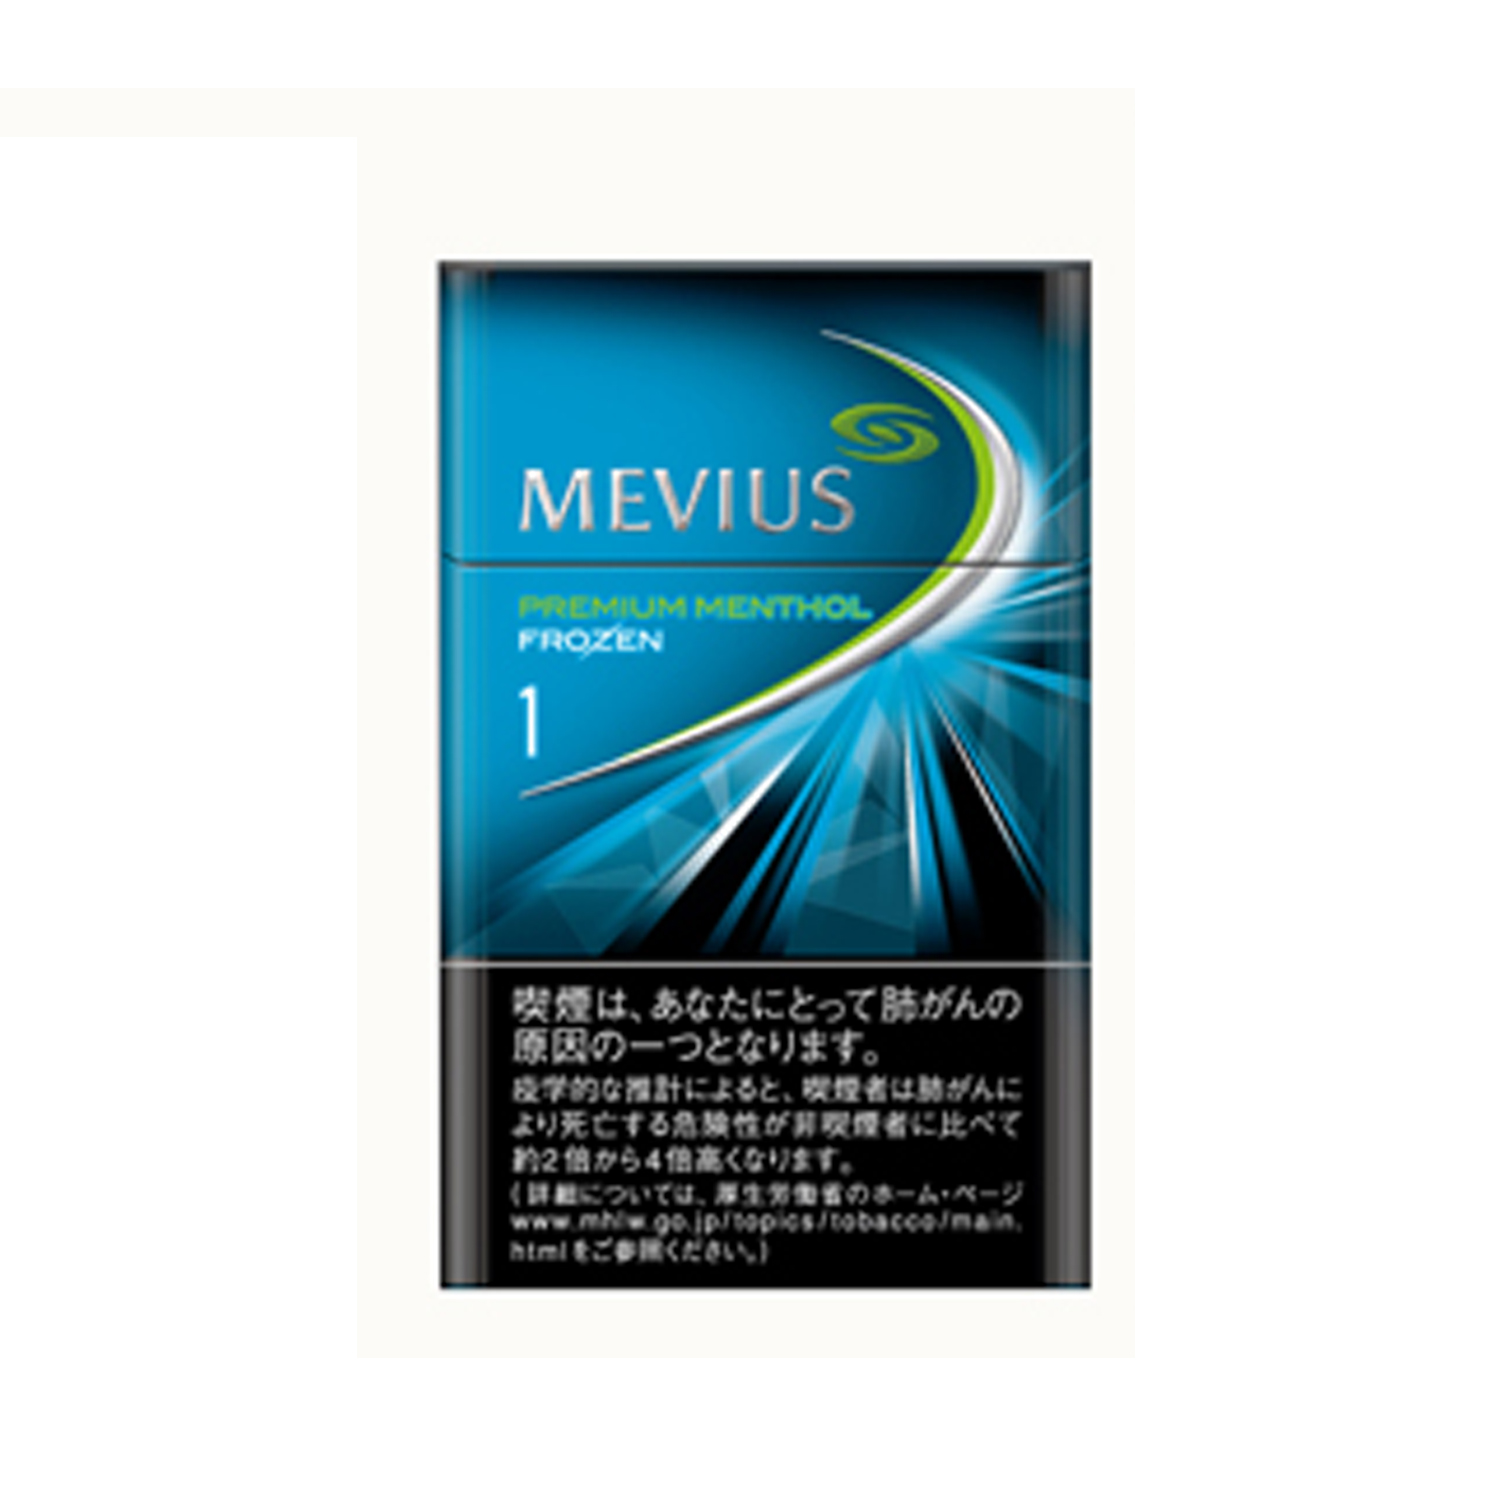 七星(Mevius) 冰薄荷爆珠 1Mg 美国现货2-3天寄送 美国 澳洲 加拿大 英国